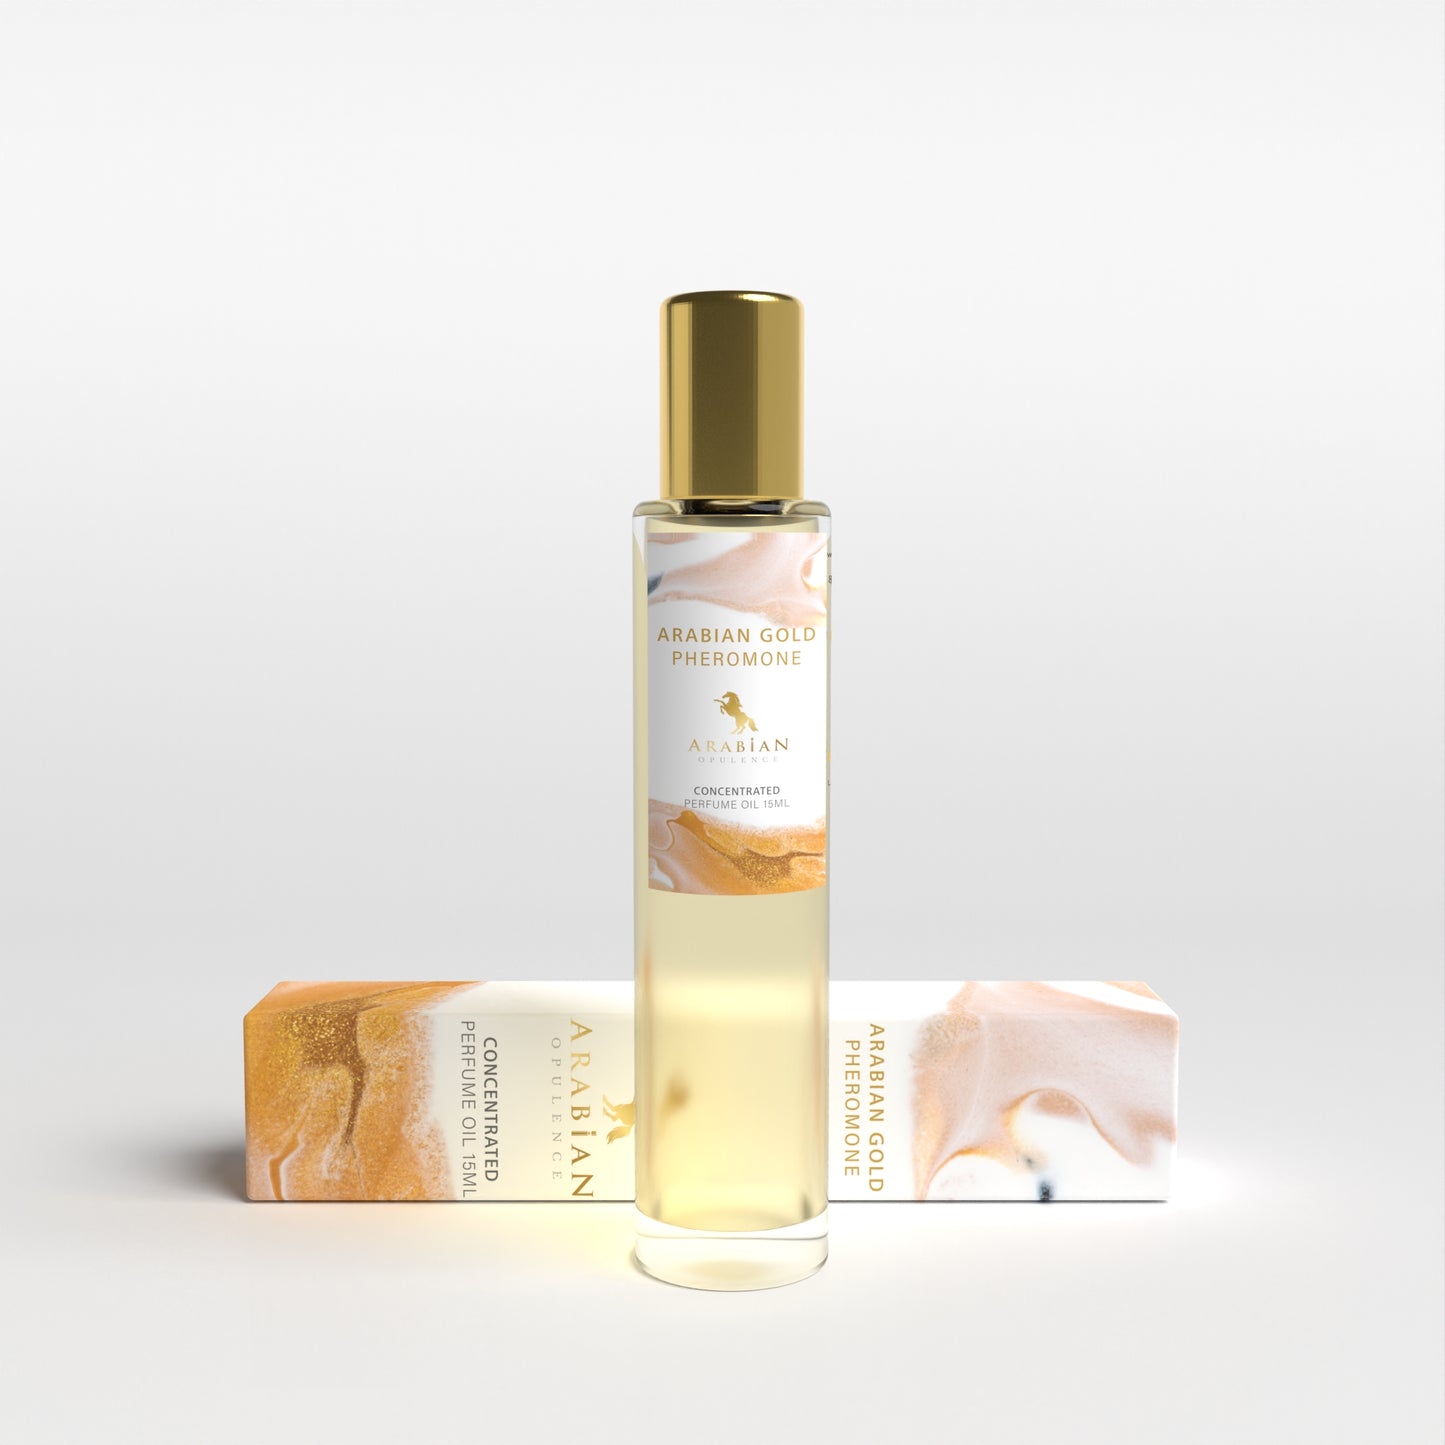 Arabian Gold Pheromone - 15ML Perfume oil for men and women